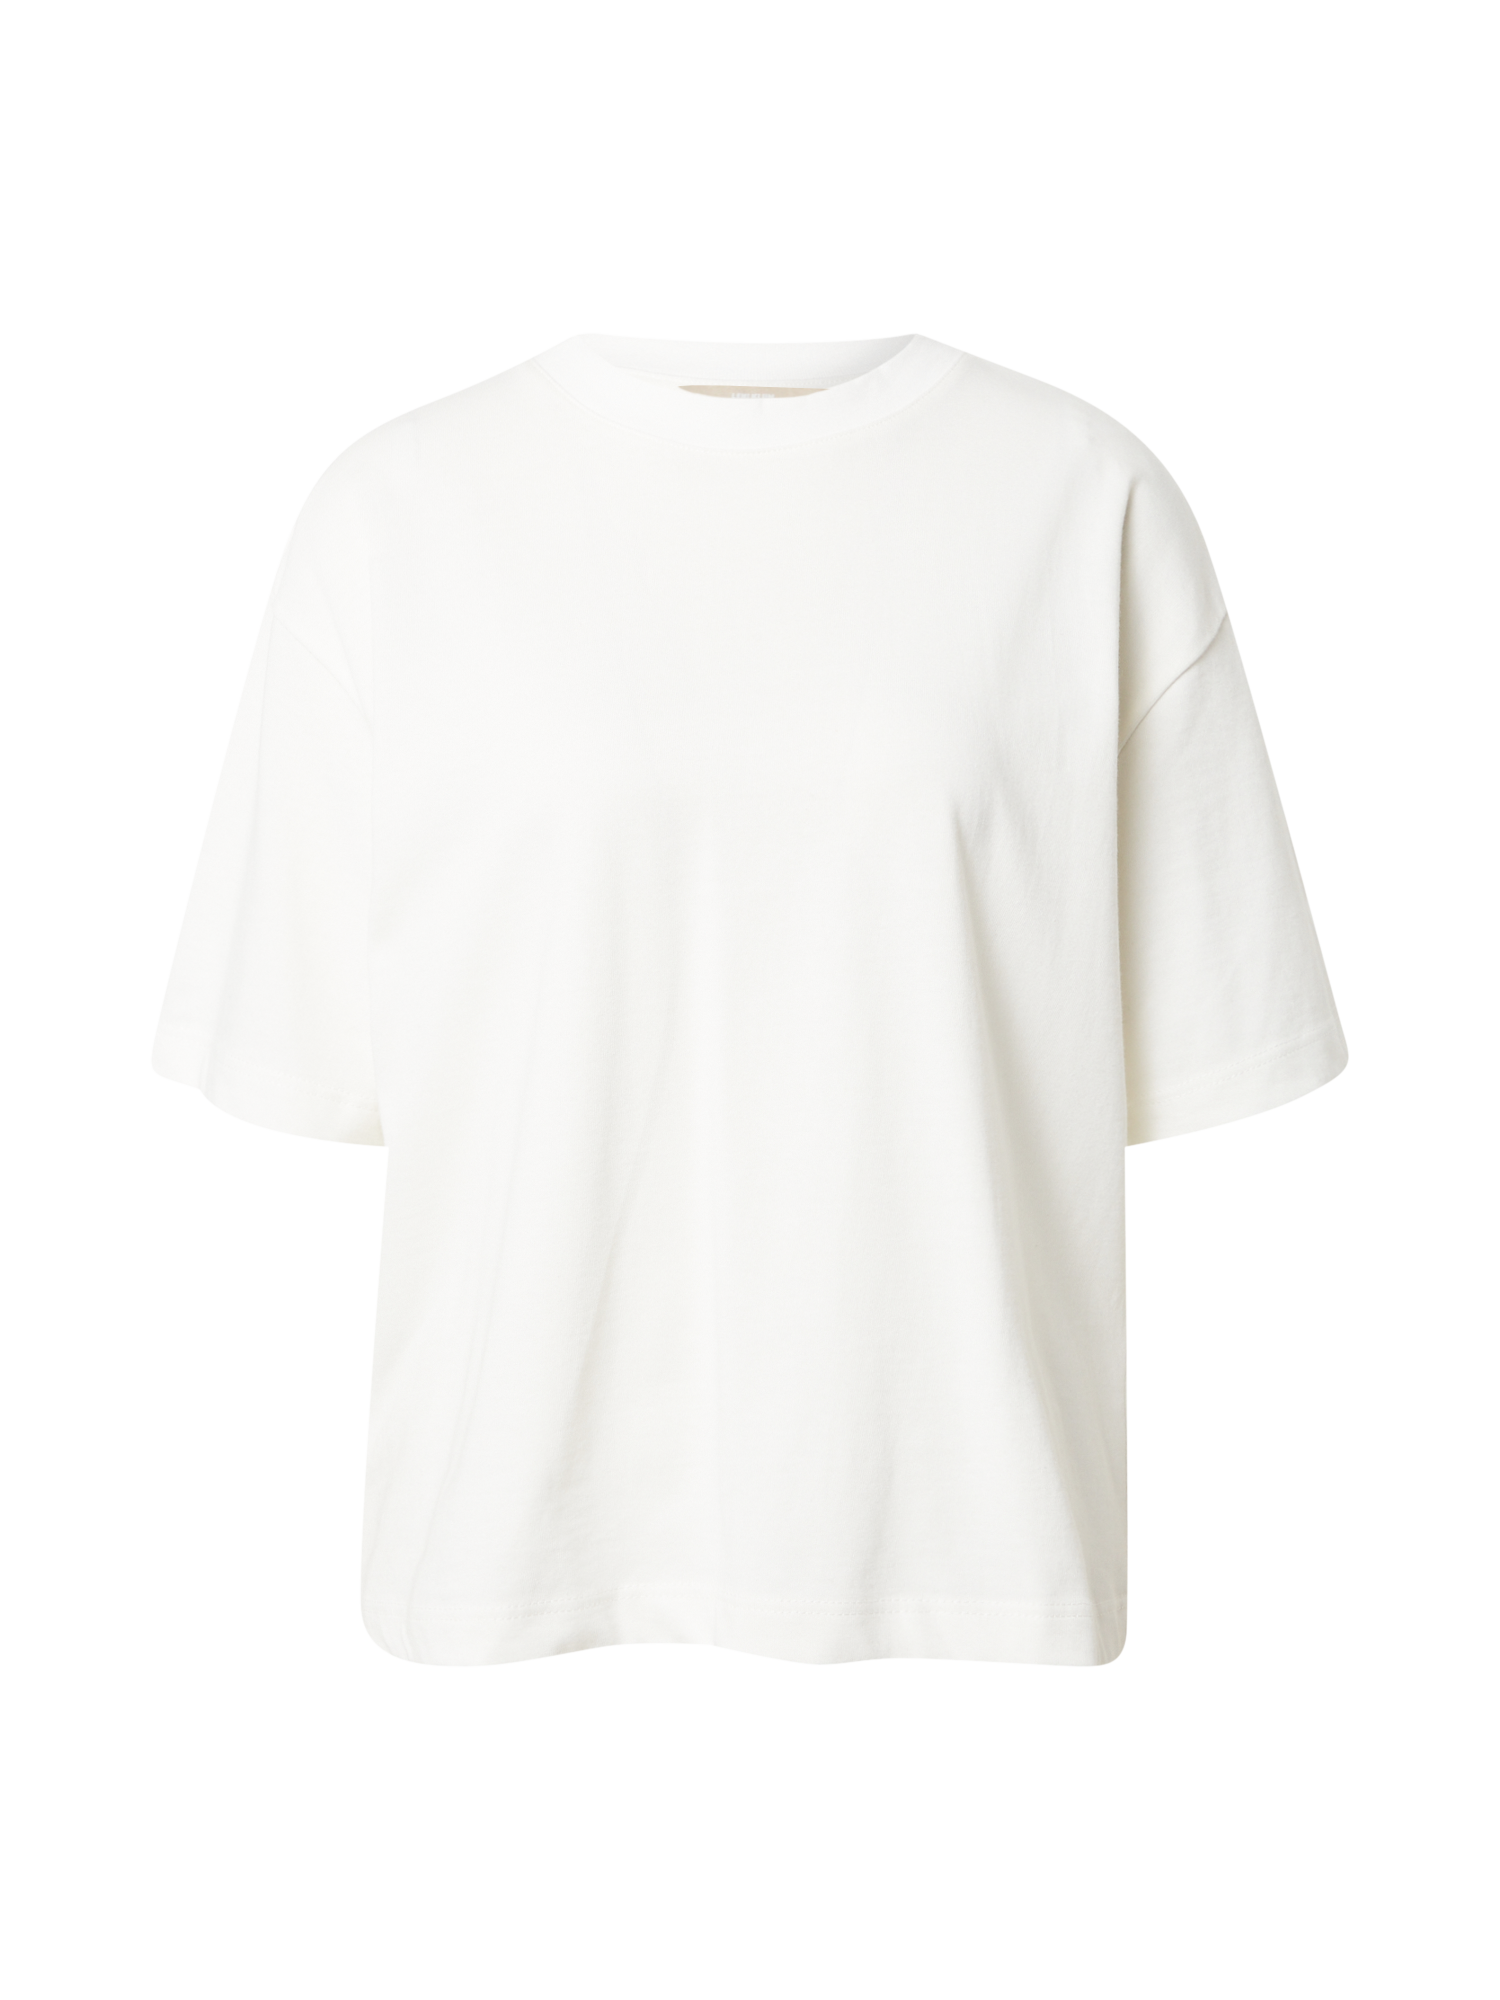 NeNEx Odzież LENI KLUM x Koszulka Heather w kolorze Białym 